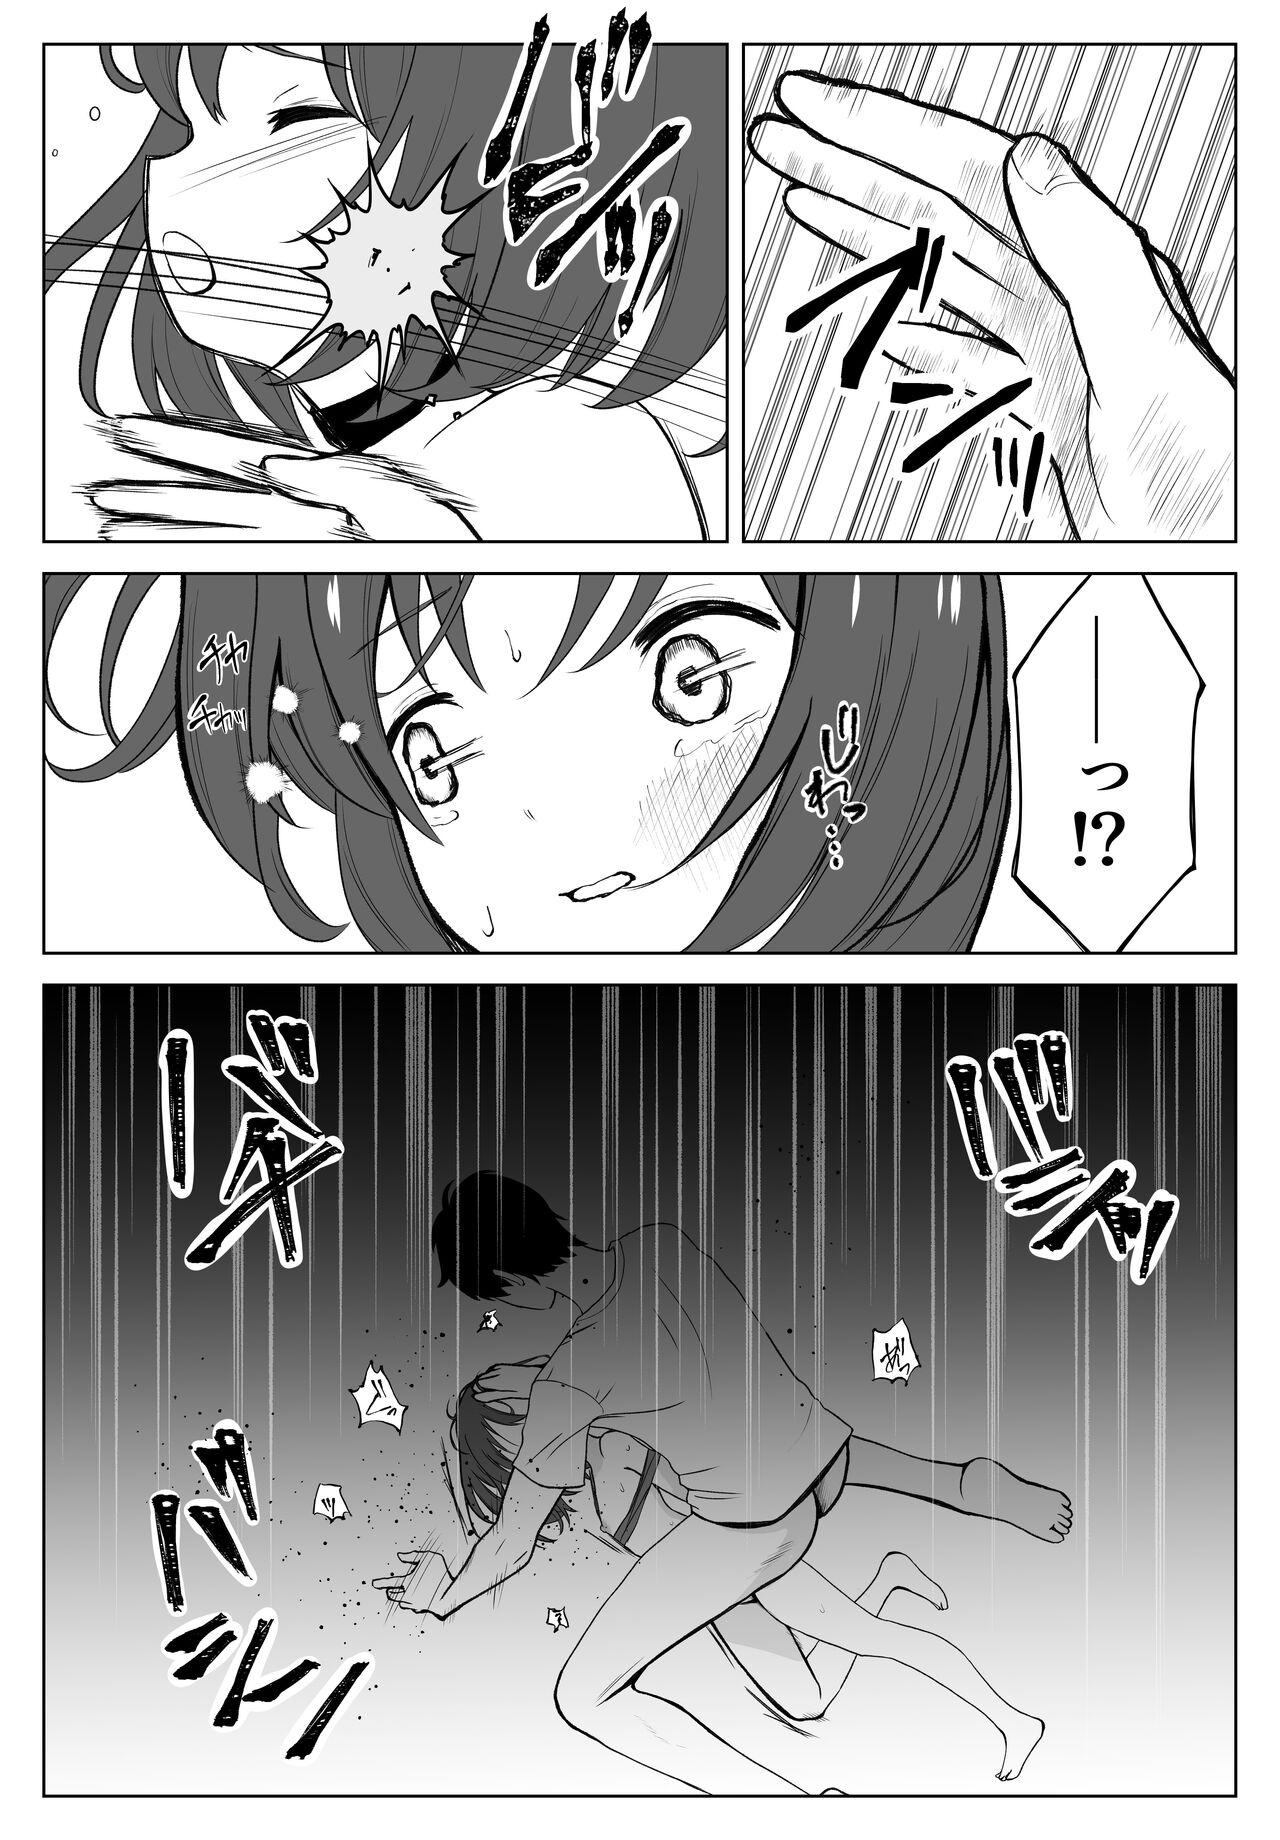 Buttfucking Gachiboko Au-chan - Original Public Sex - Page 6